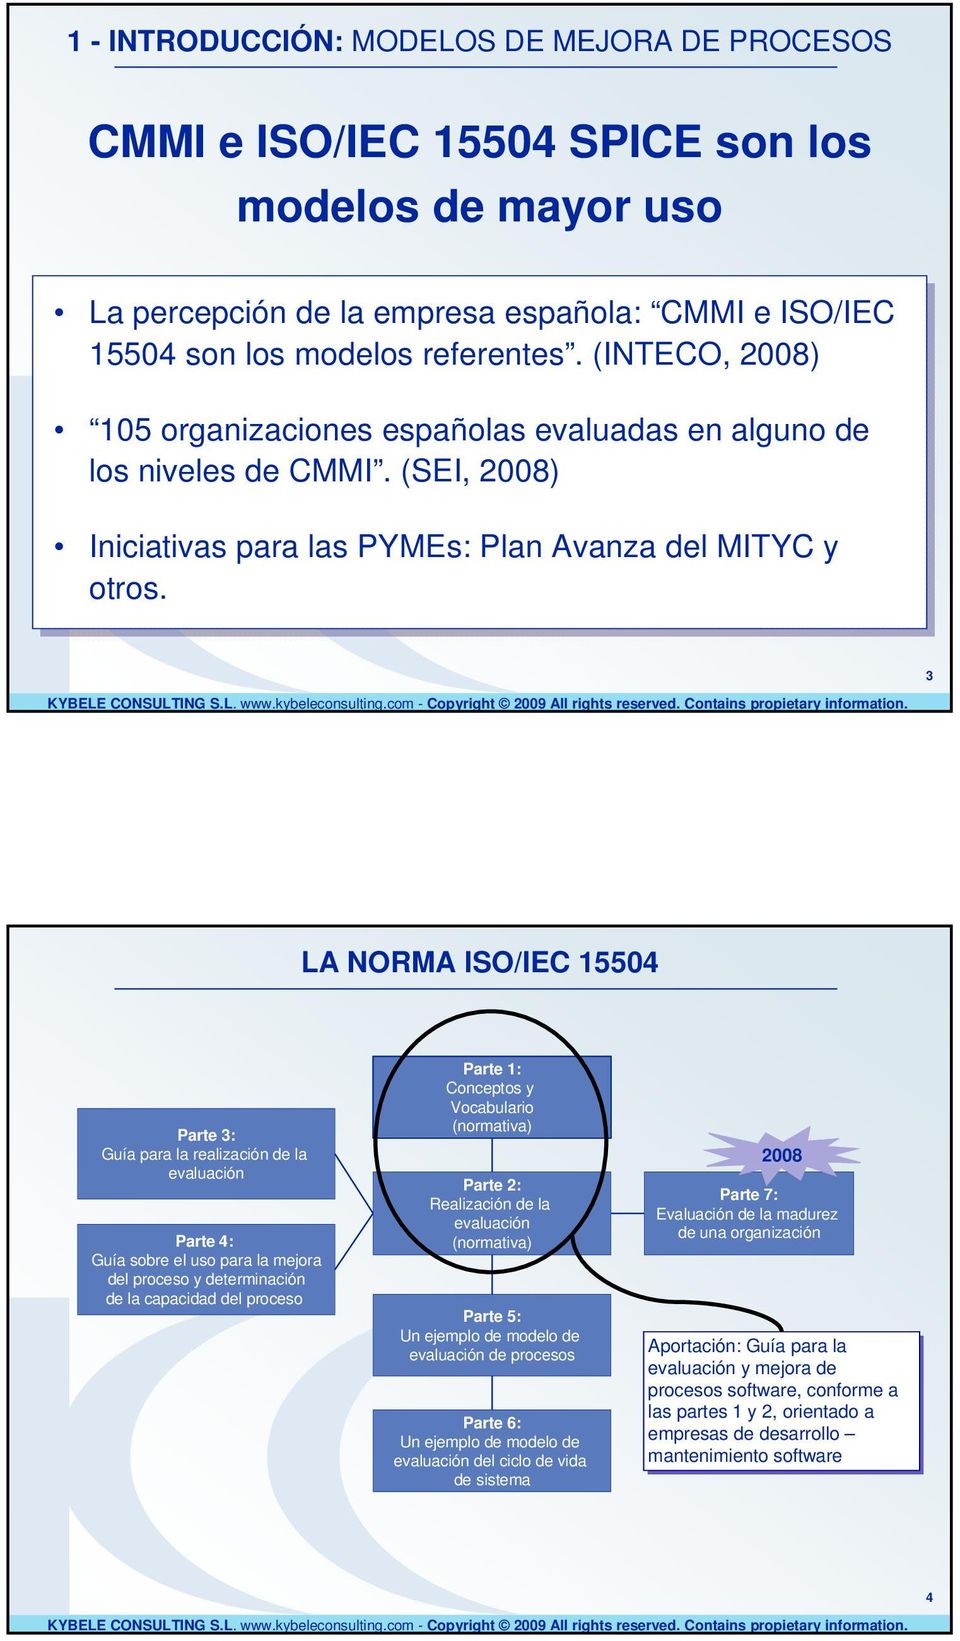 3 LA NORMA ISO/IEC 15504 Parte 3: Guía realización evaluación Parte 4: Guía sobre uso mejora l terminación capacidad l Parte 1: Conceptos Vocaburio (normativa) Parte 2: Realización evaluación